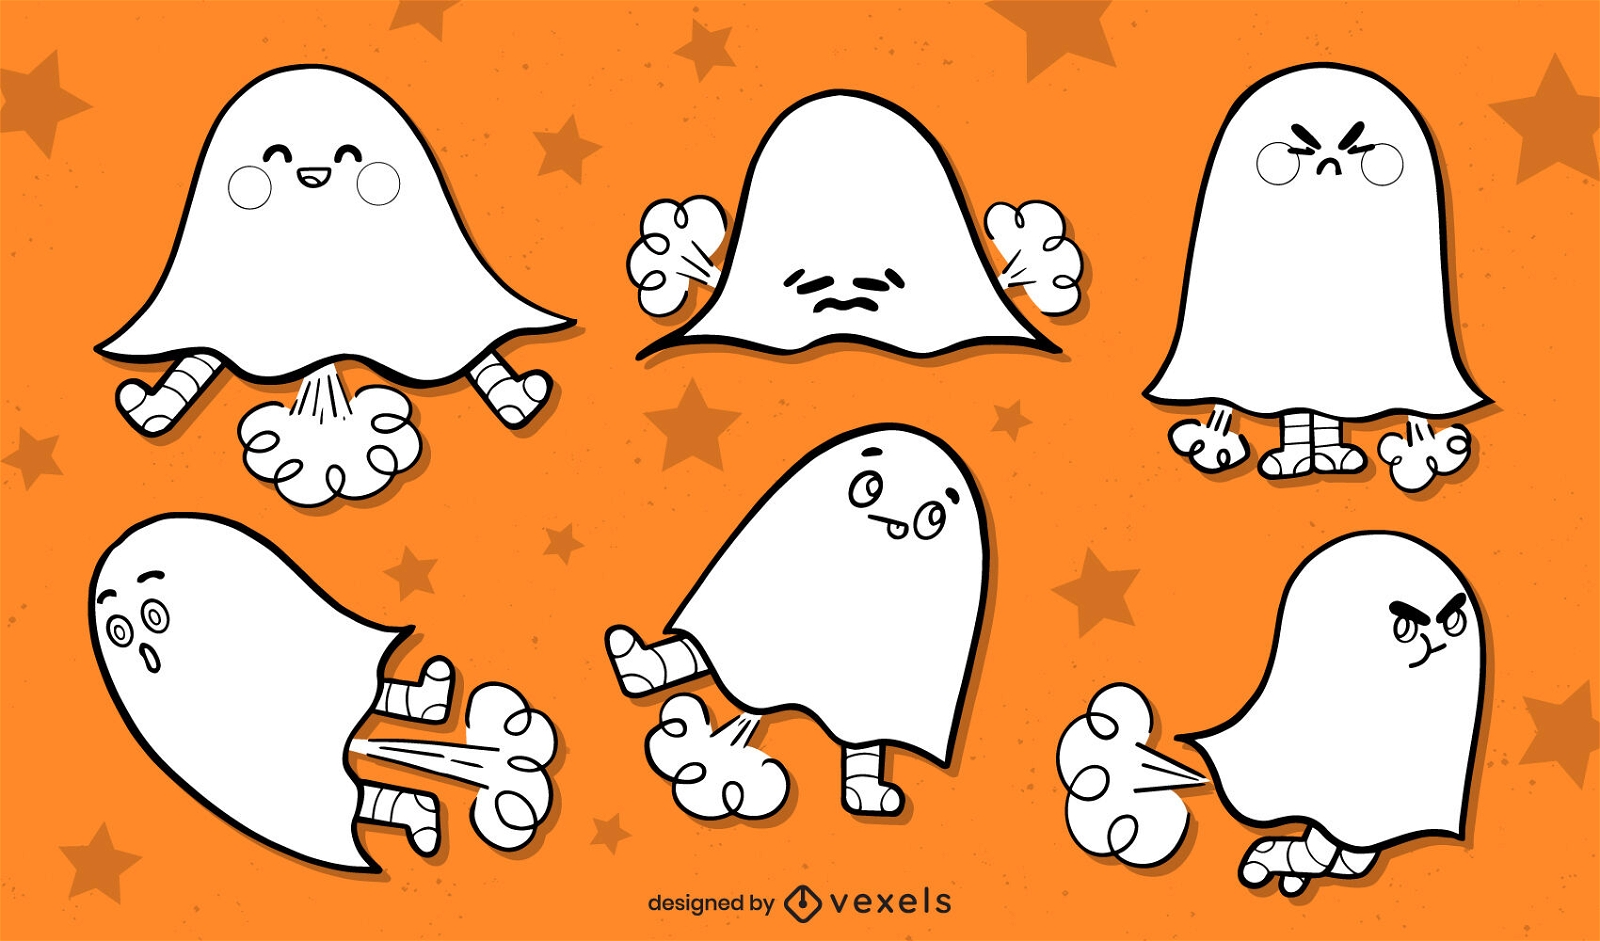 Desenho de fantasma de halloween dos desenhos animados